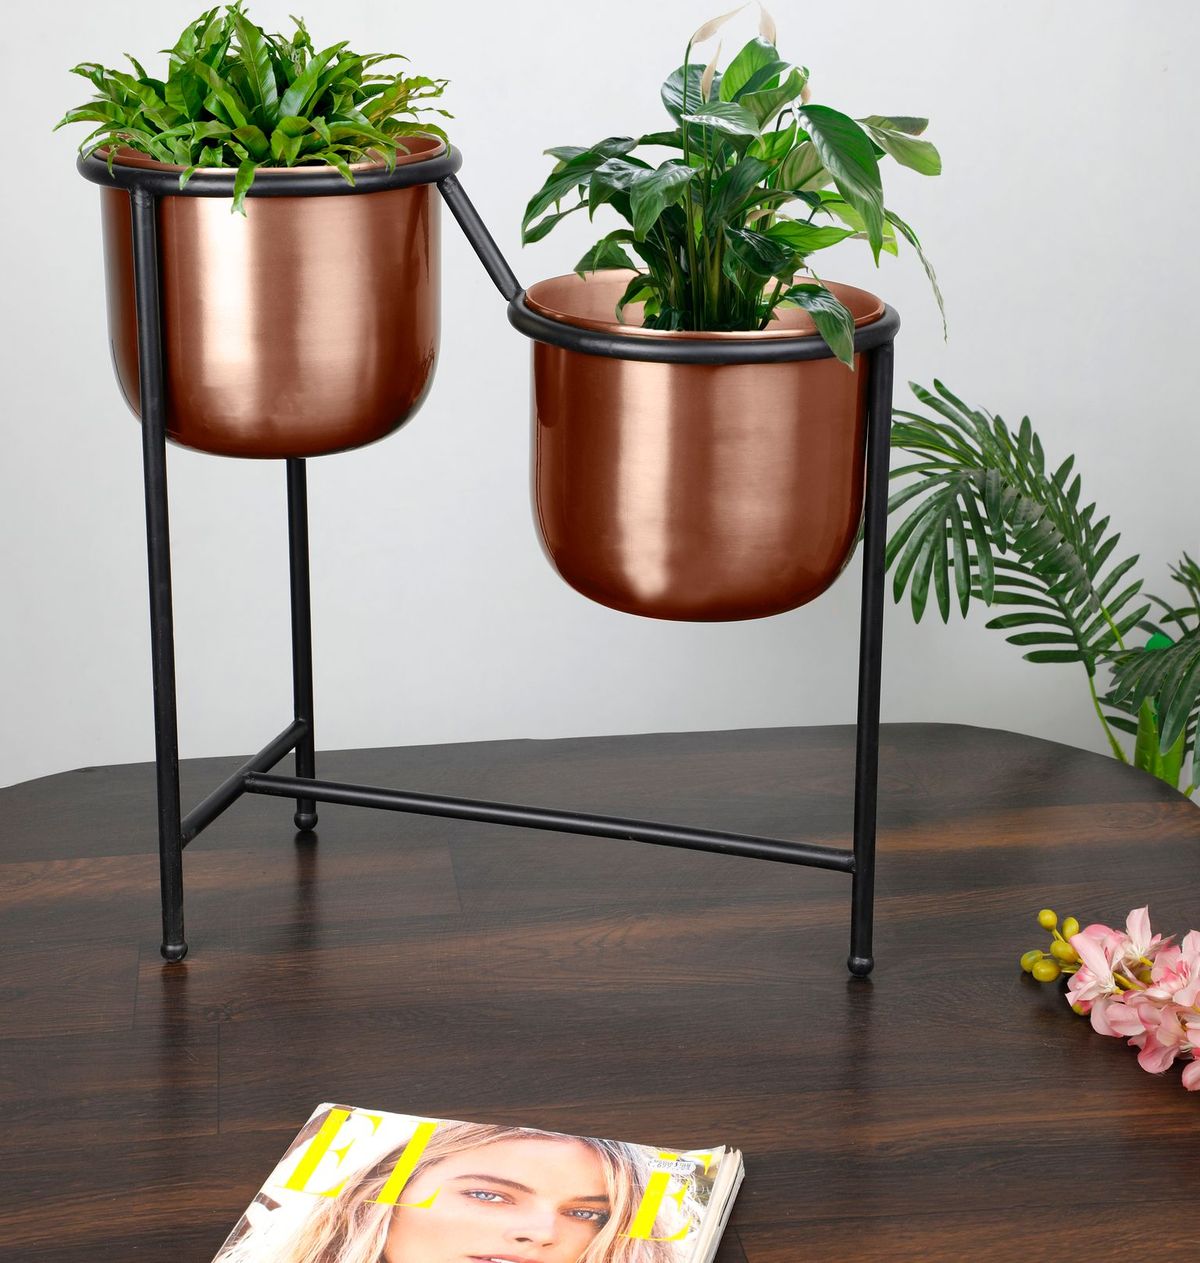 IRIS Metal Planter Pot With Stand